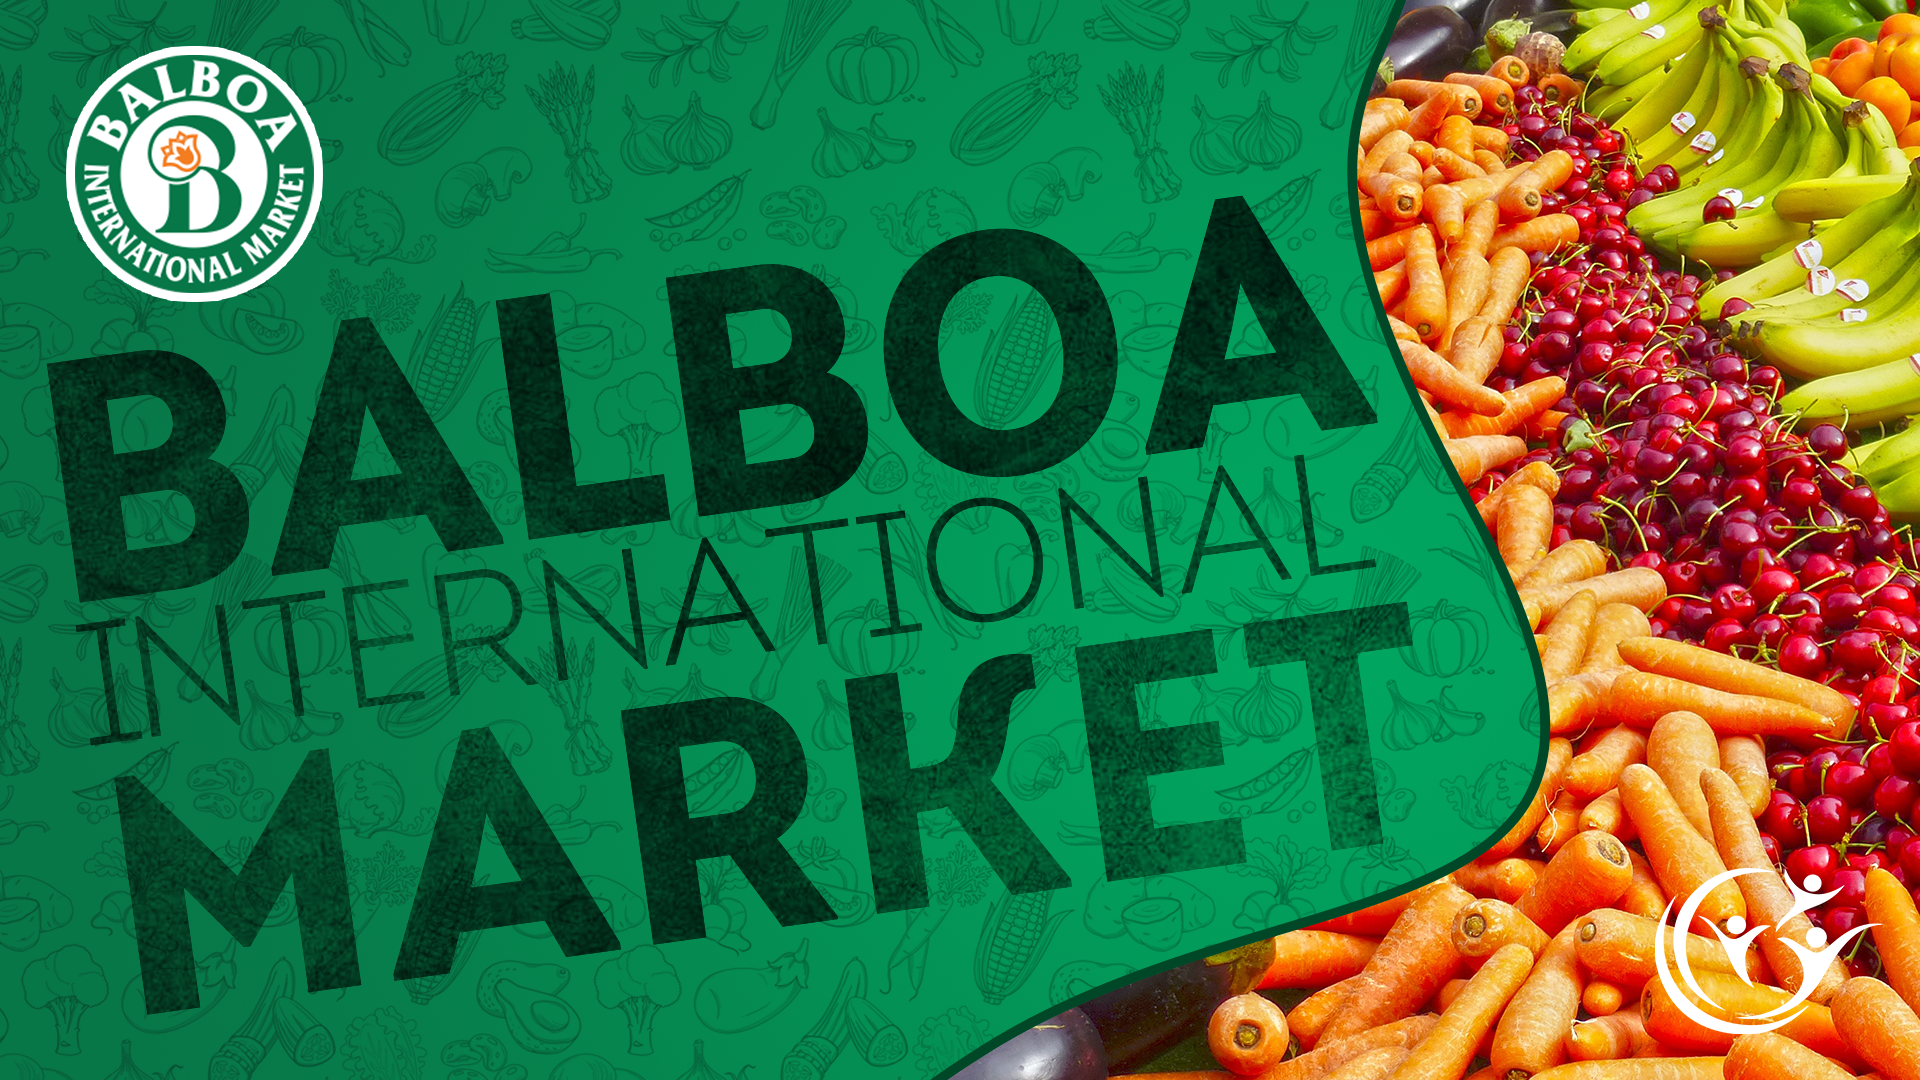 Balboa Market